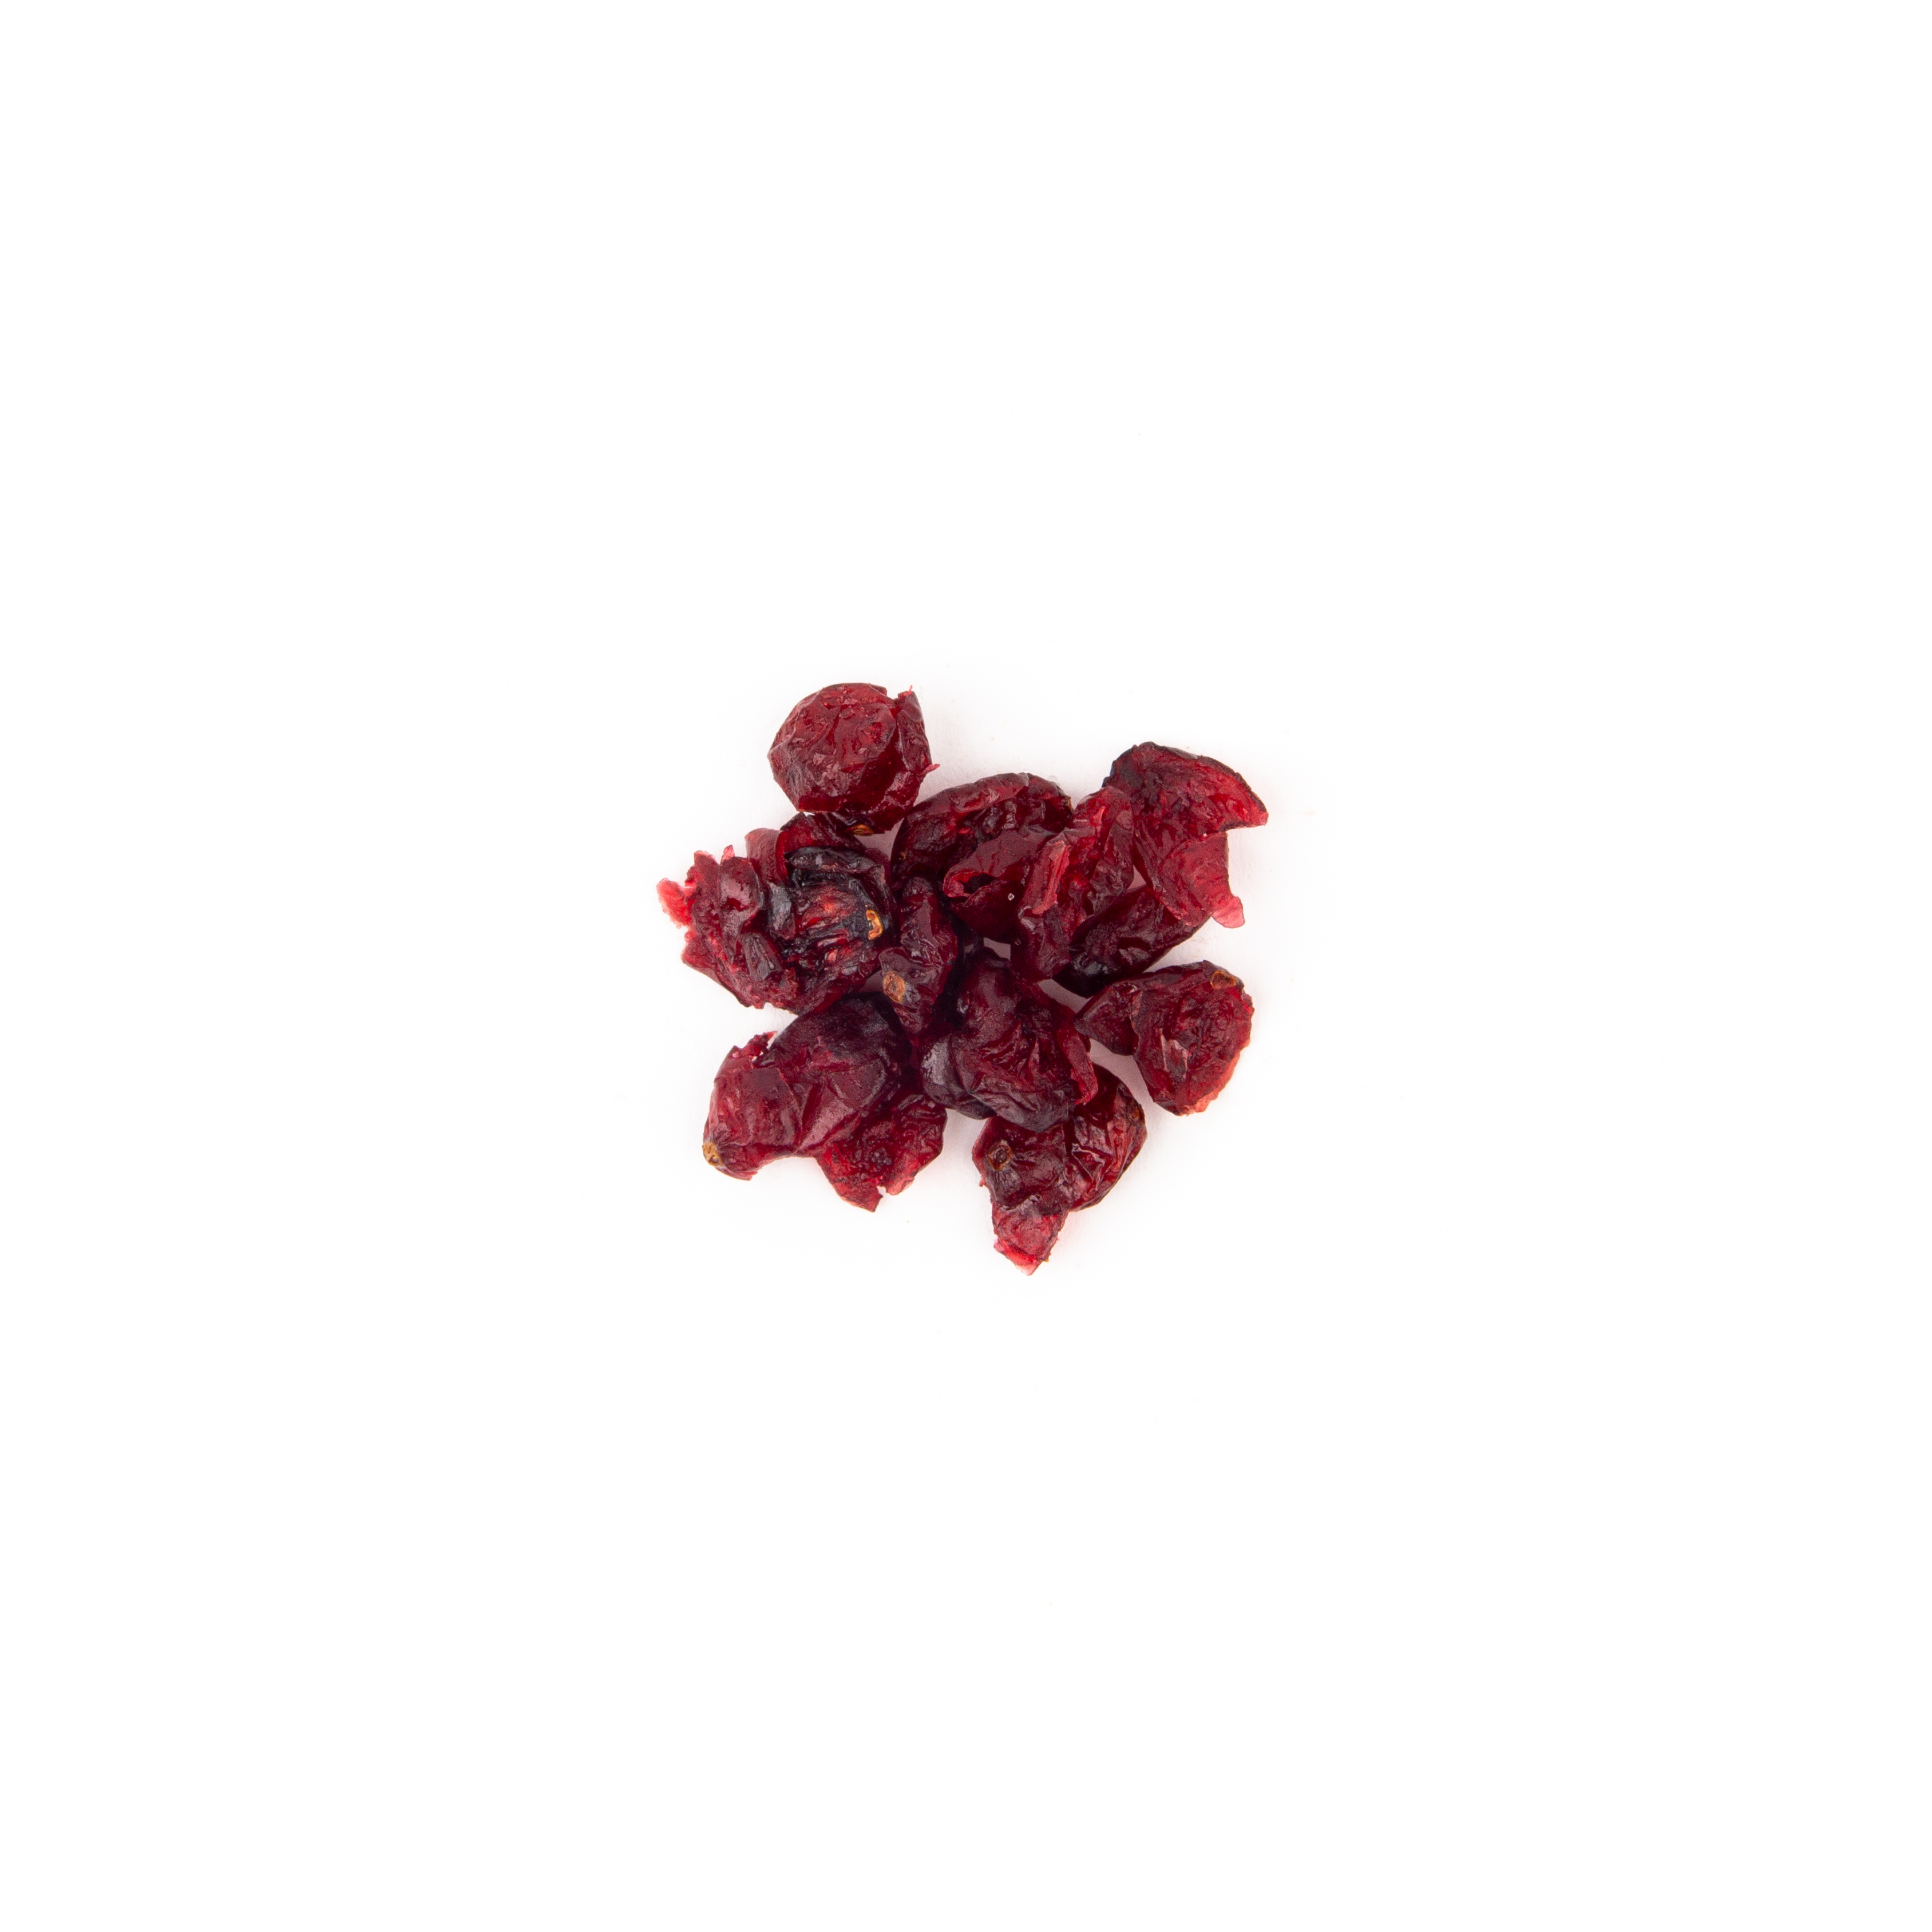 Cranberry Häufchen